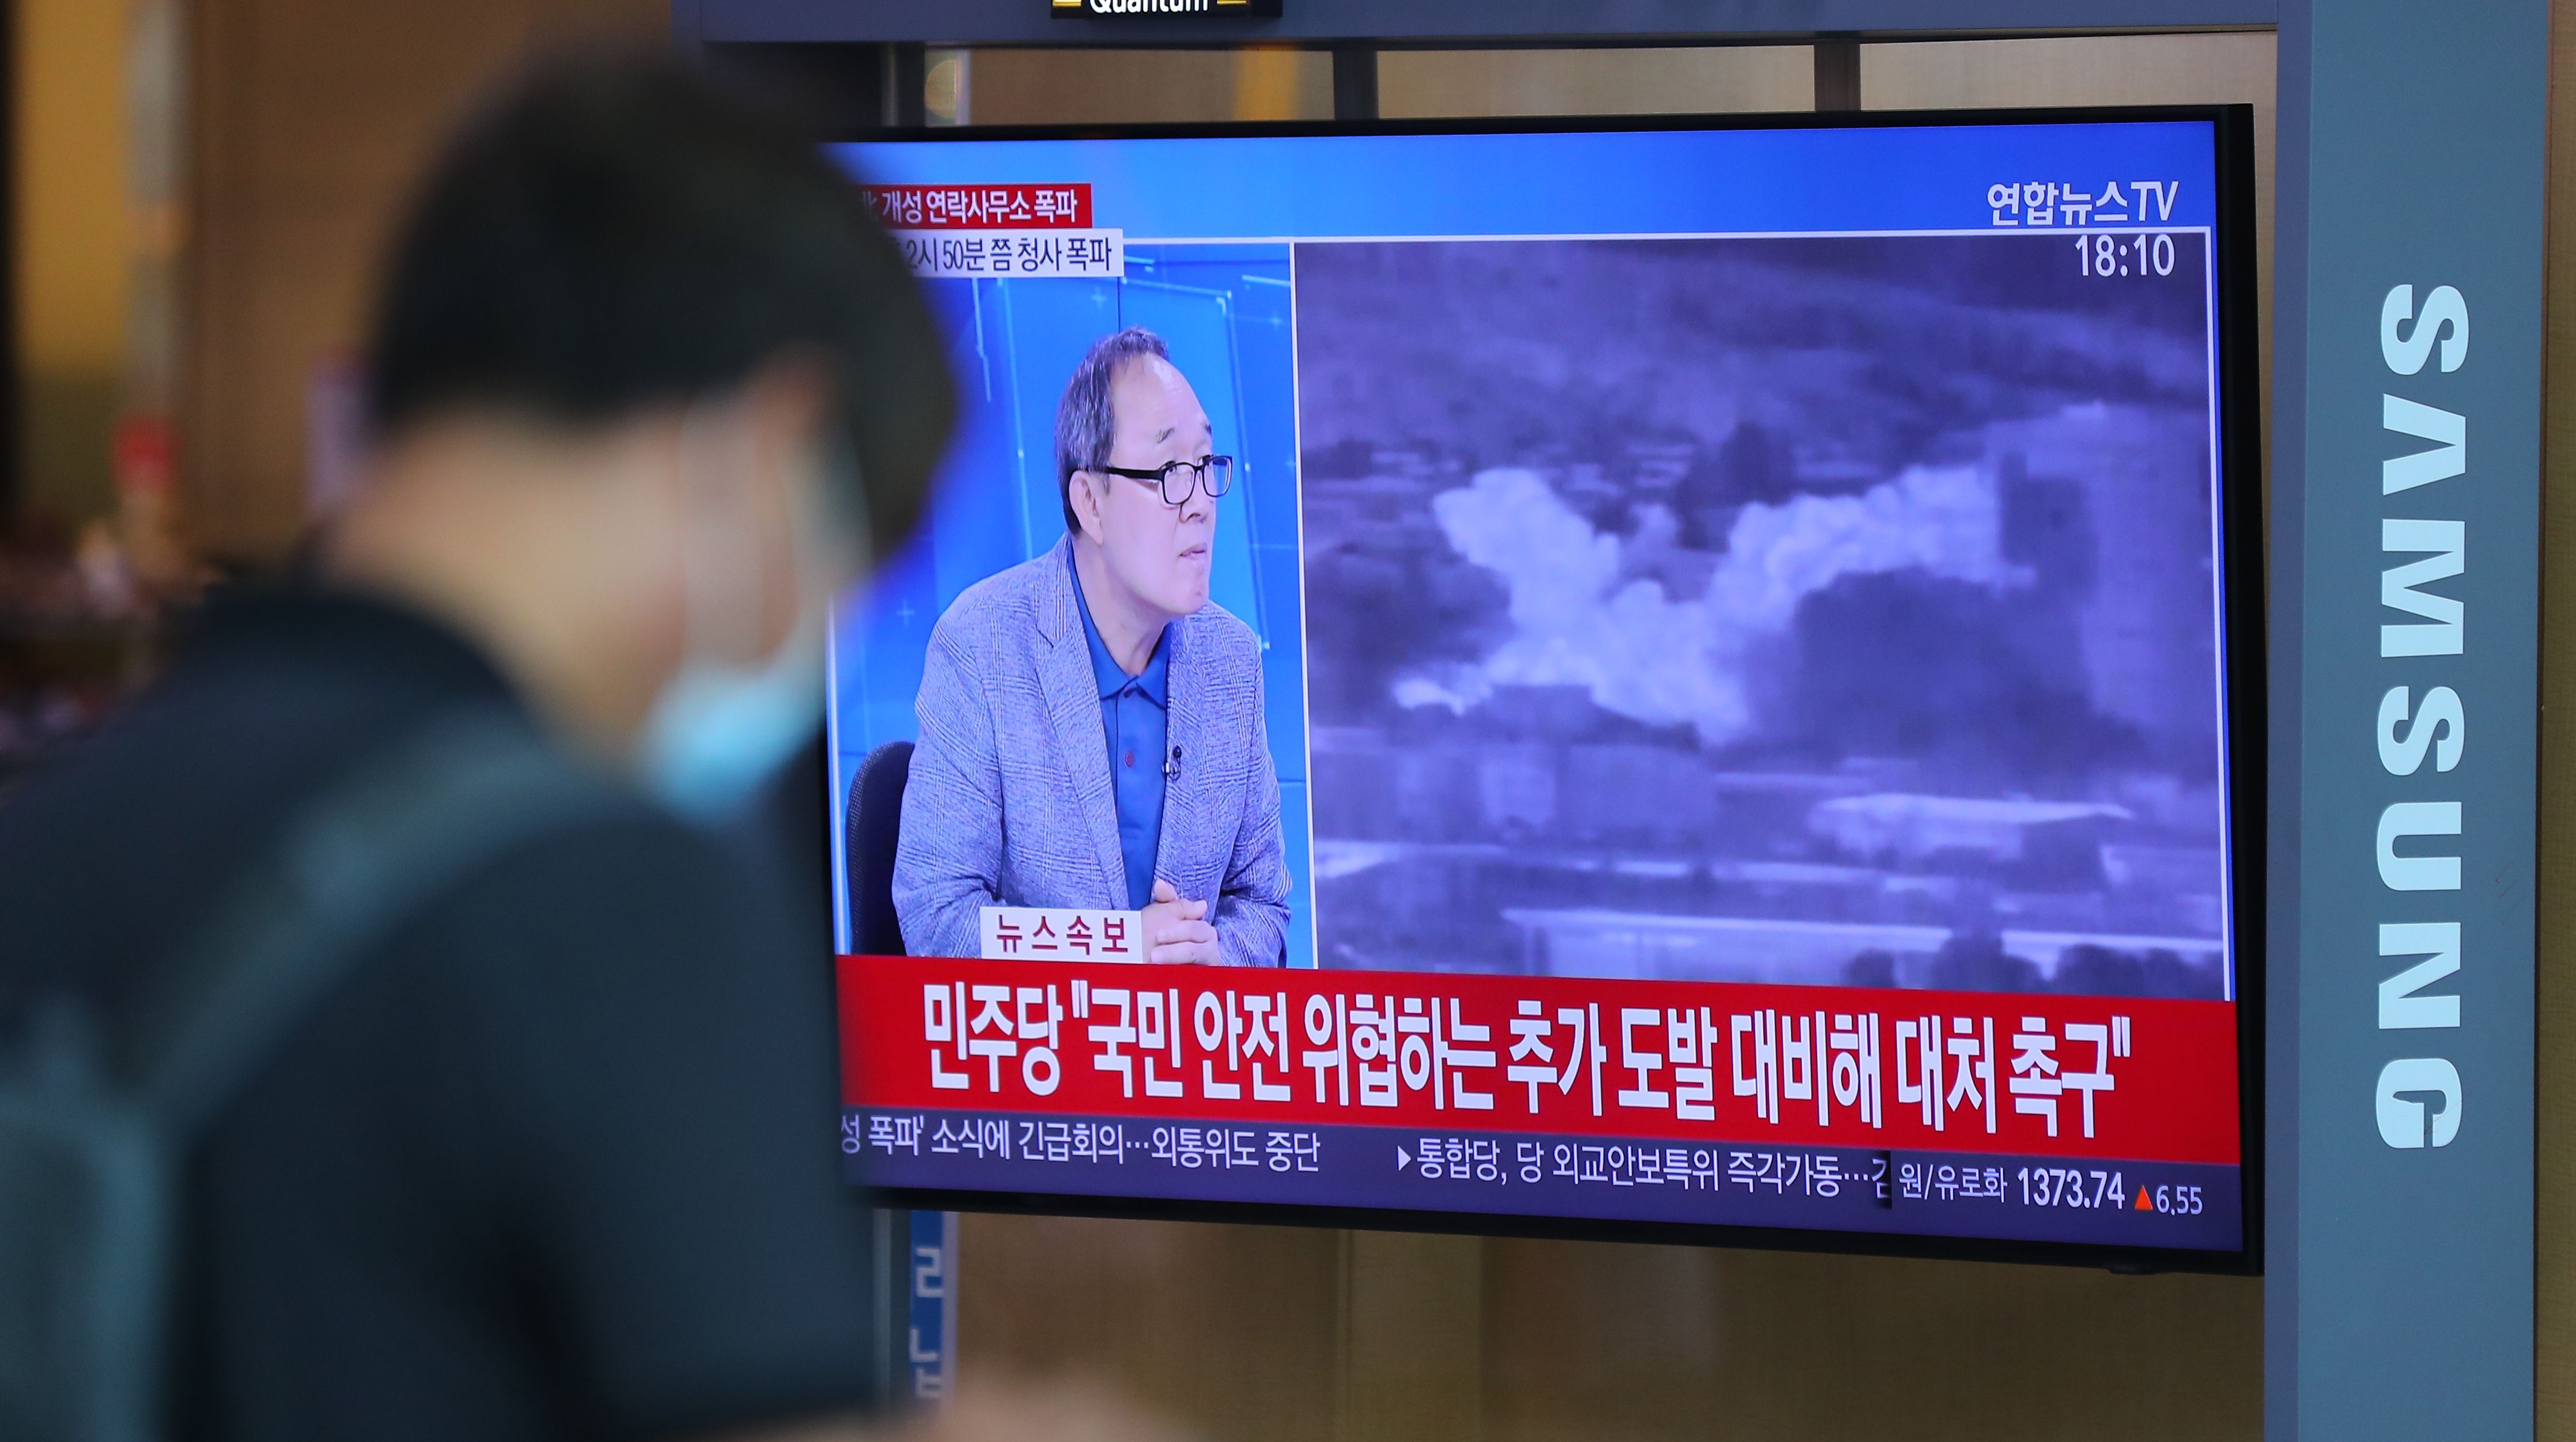 もう文在寅は金正恩の機嫌を取っている場合ではない　金与正の「韓国罵倒」と連絡事務所爆破から見える北朝鮮の切迫度